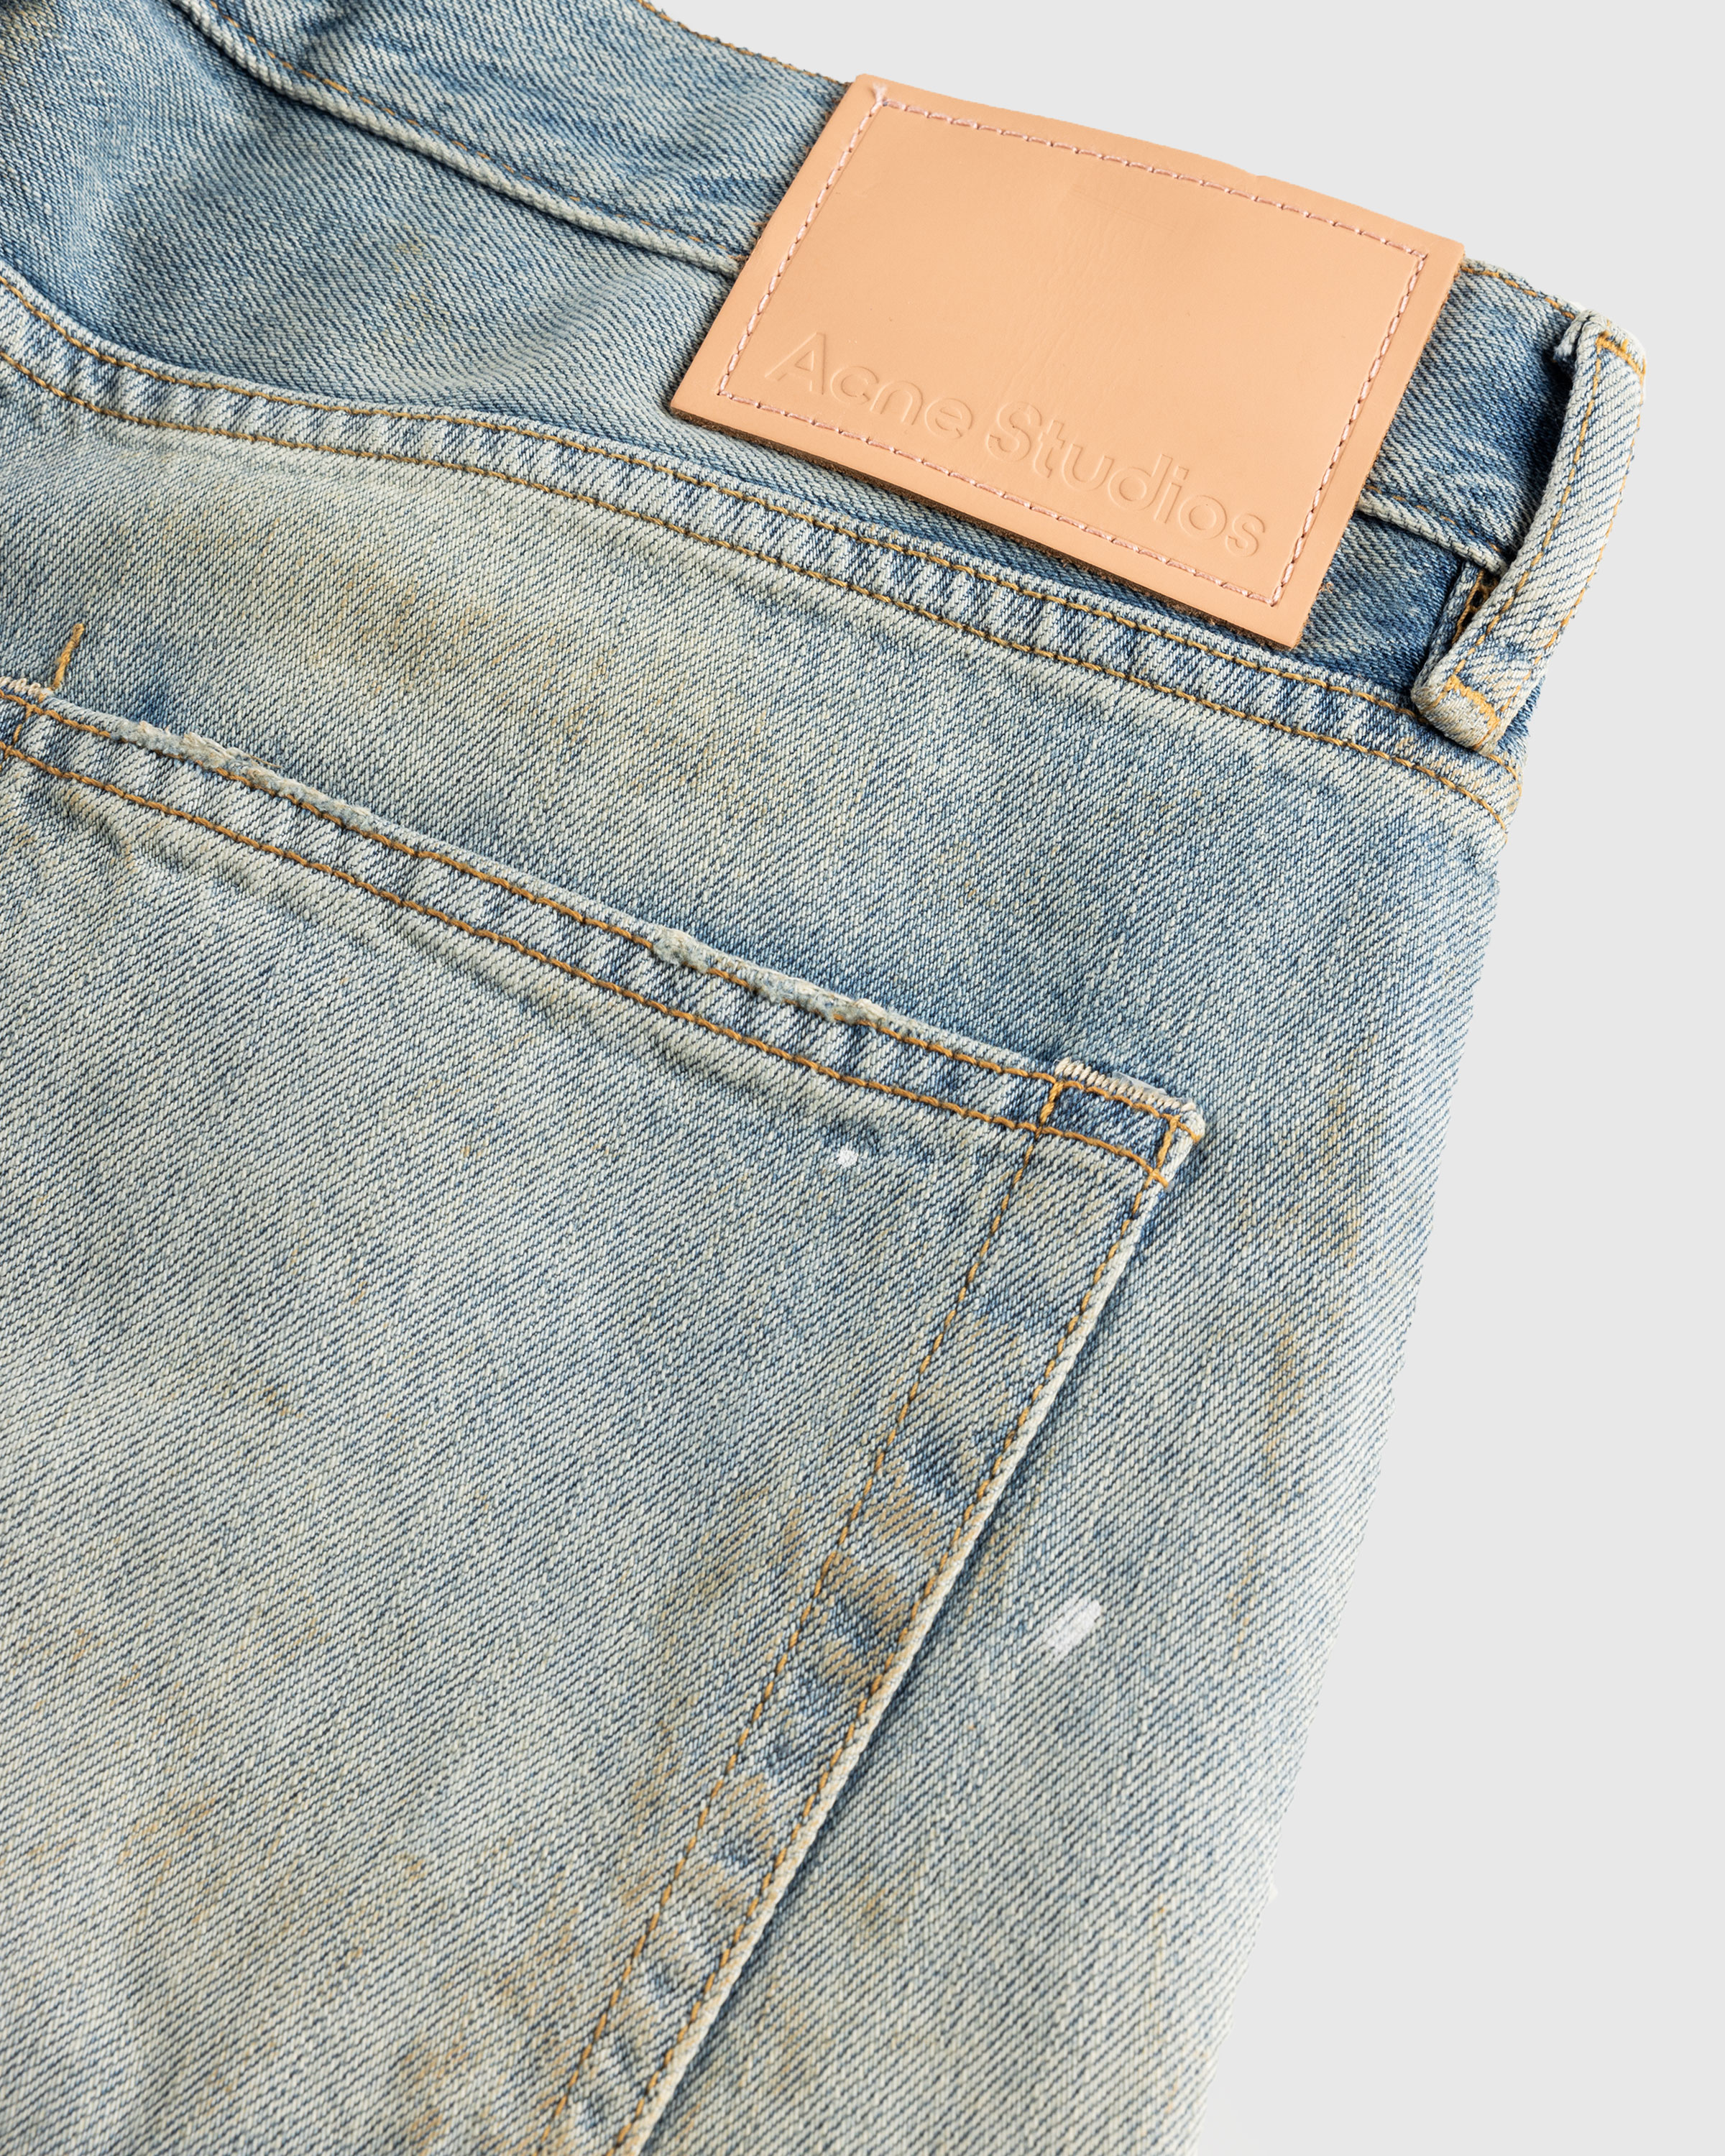 Acne Studios – Loose Fit Jeans 1981M Light Blue - Pants - Blue - Image 6